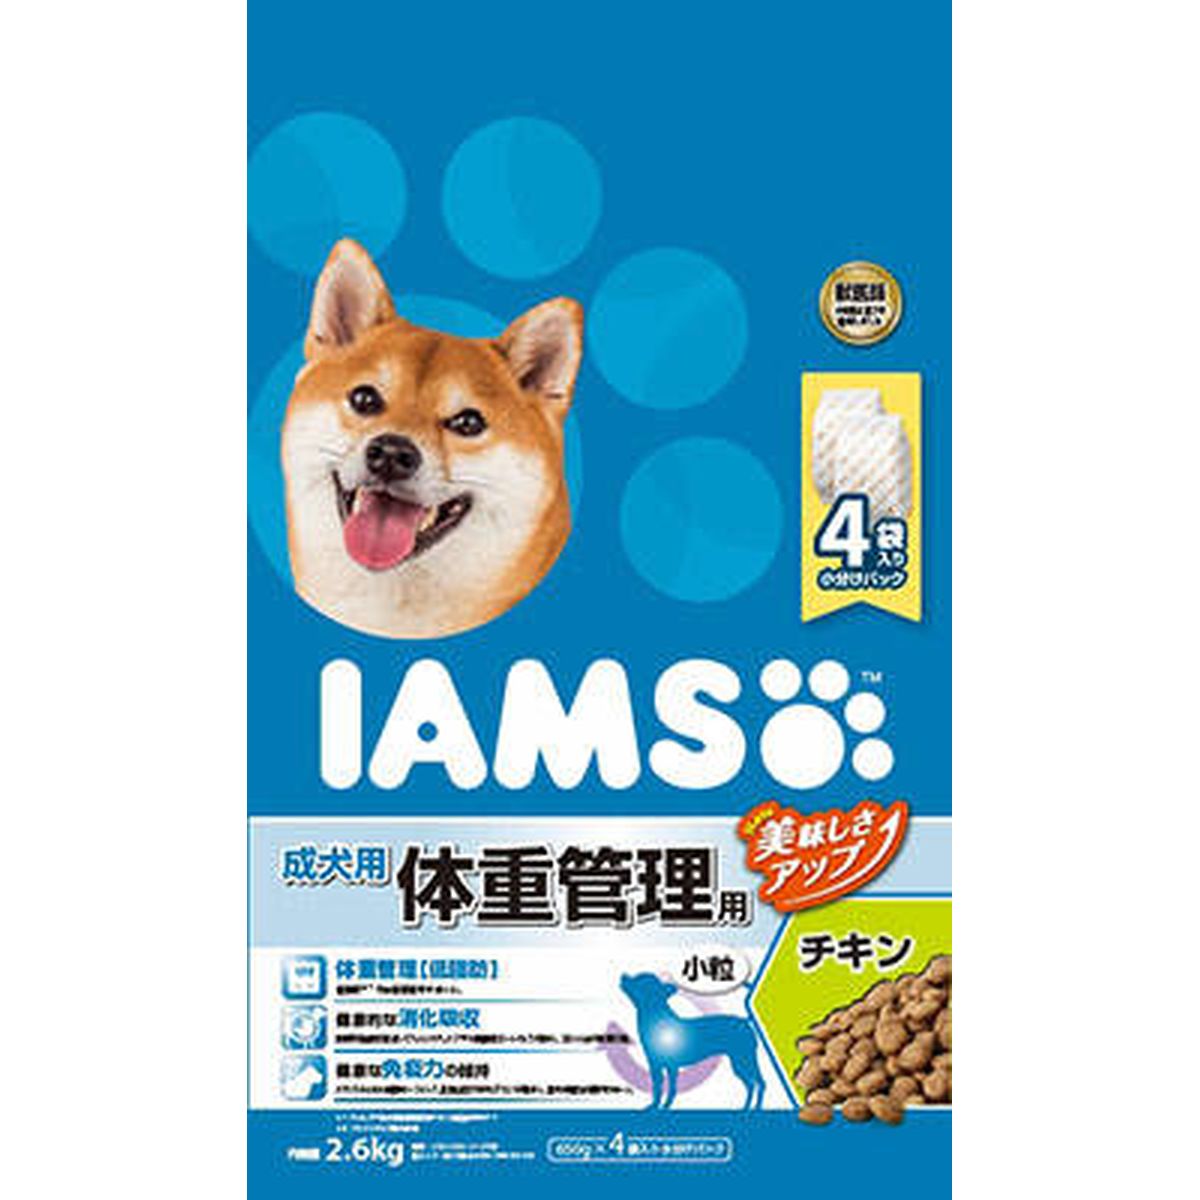 アイムス 成犬用 体重管理用 チキン 小粒2.6kg×4袋